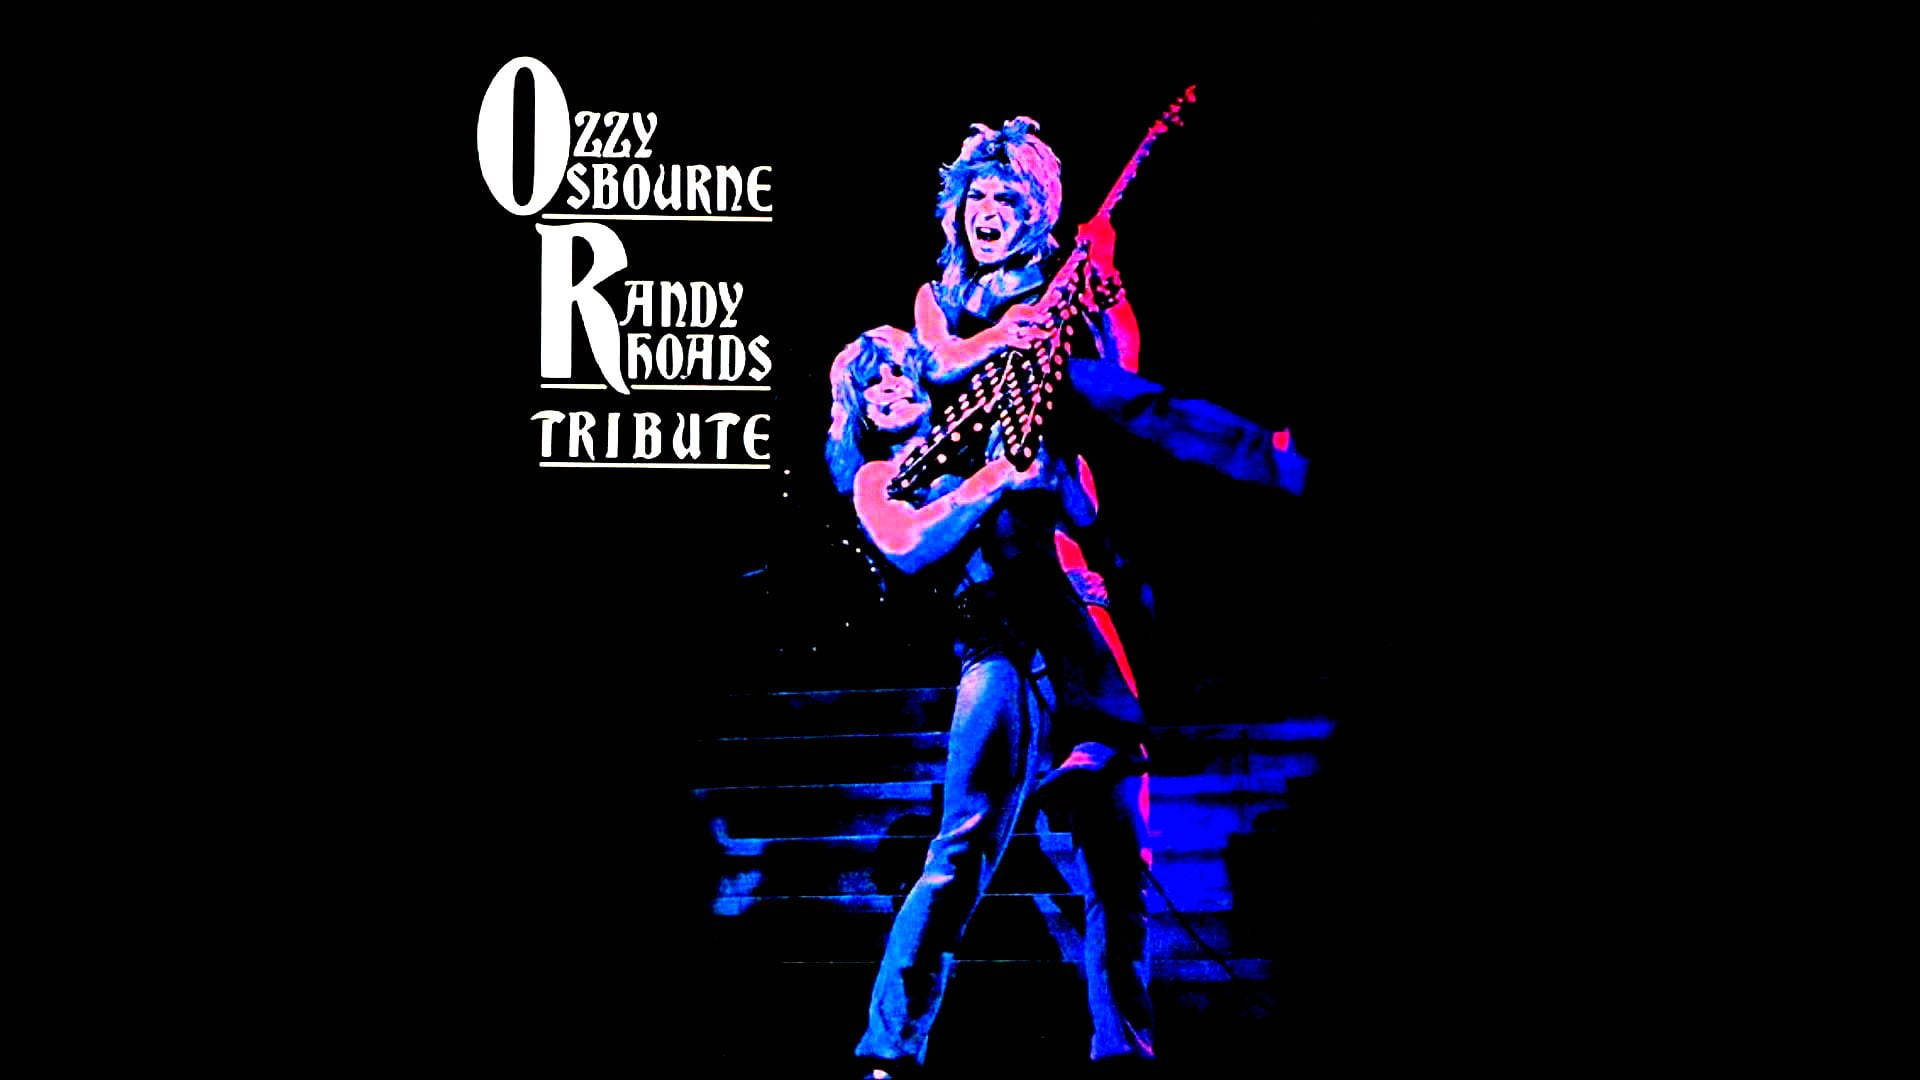 Ozzy Osbourne Tribute Wallpaper